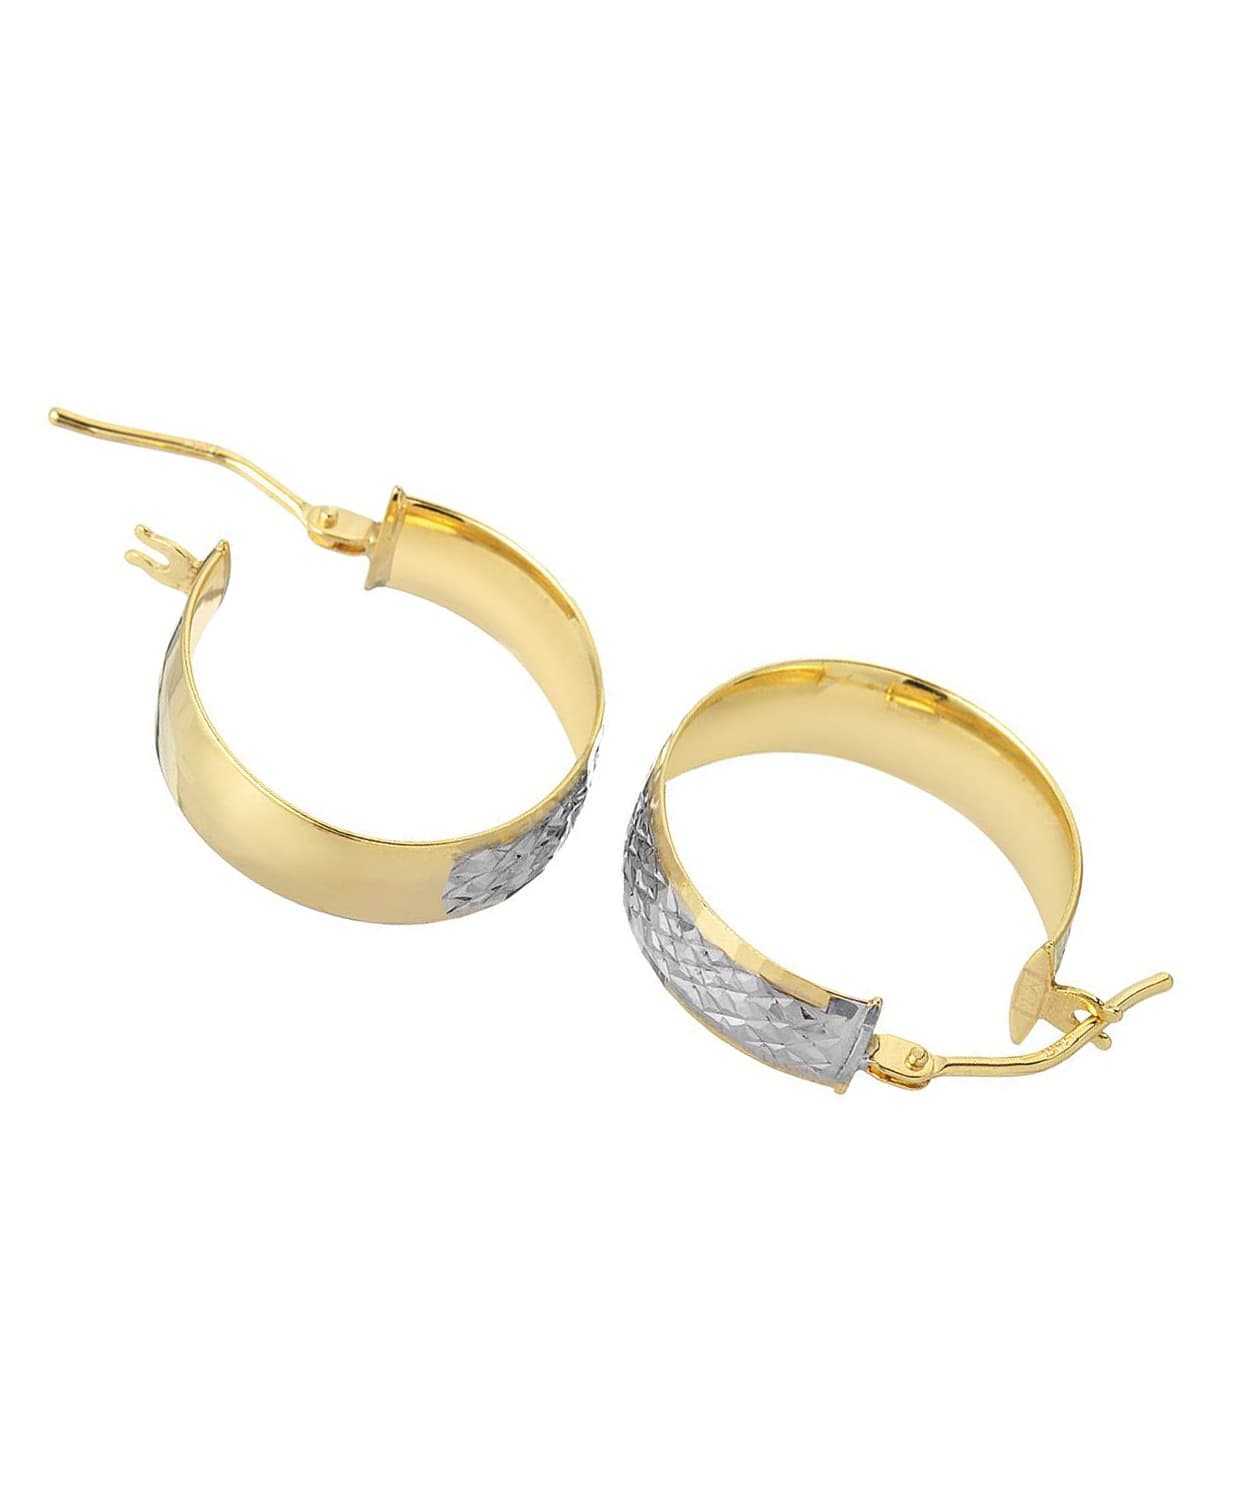 14k Two-Tone Gold Diamond Cut Hoop Earrings View 2